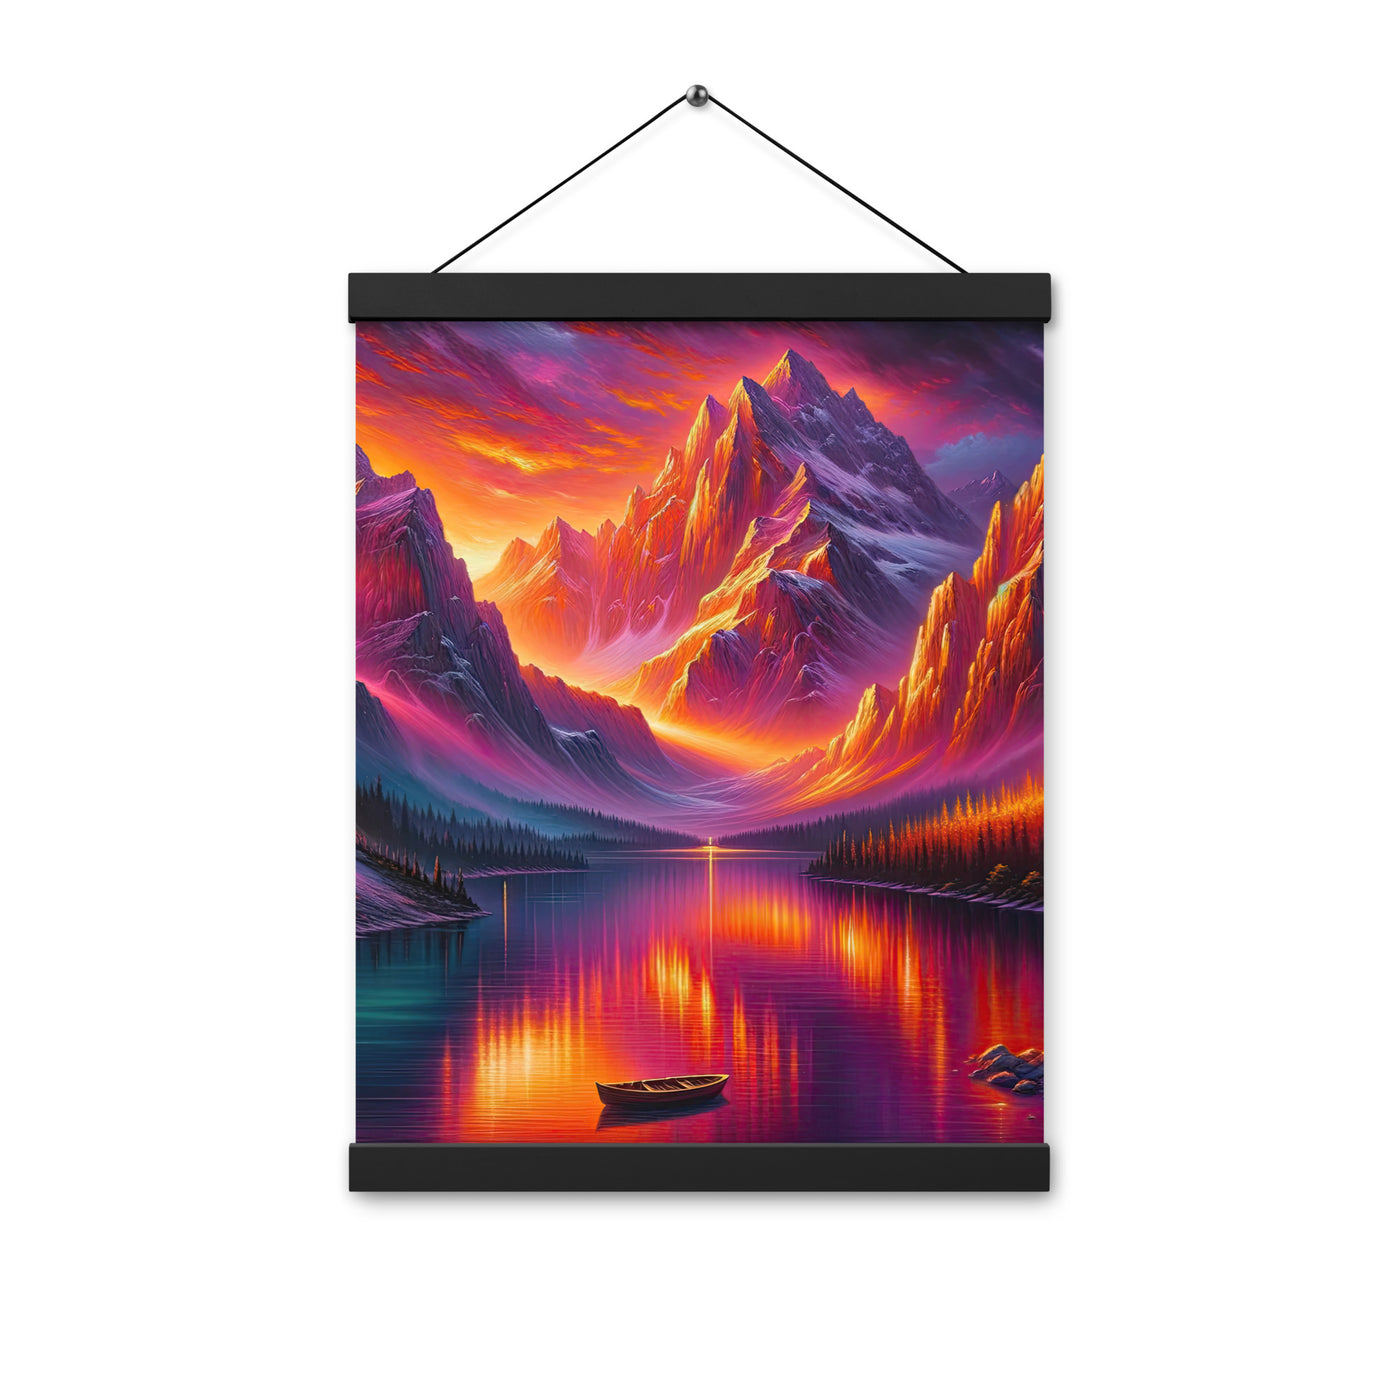 Ölgemälde eines Bootes auf einem Bergsee bei Sonnenuntergang, lebendige Orange-Lila Töne - Premium Poster mit Aufhängung berge xxx yyy zzz 30.5 x 40.6 cm